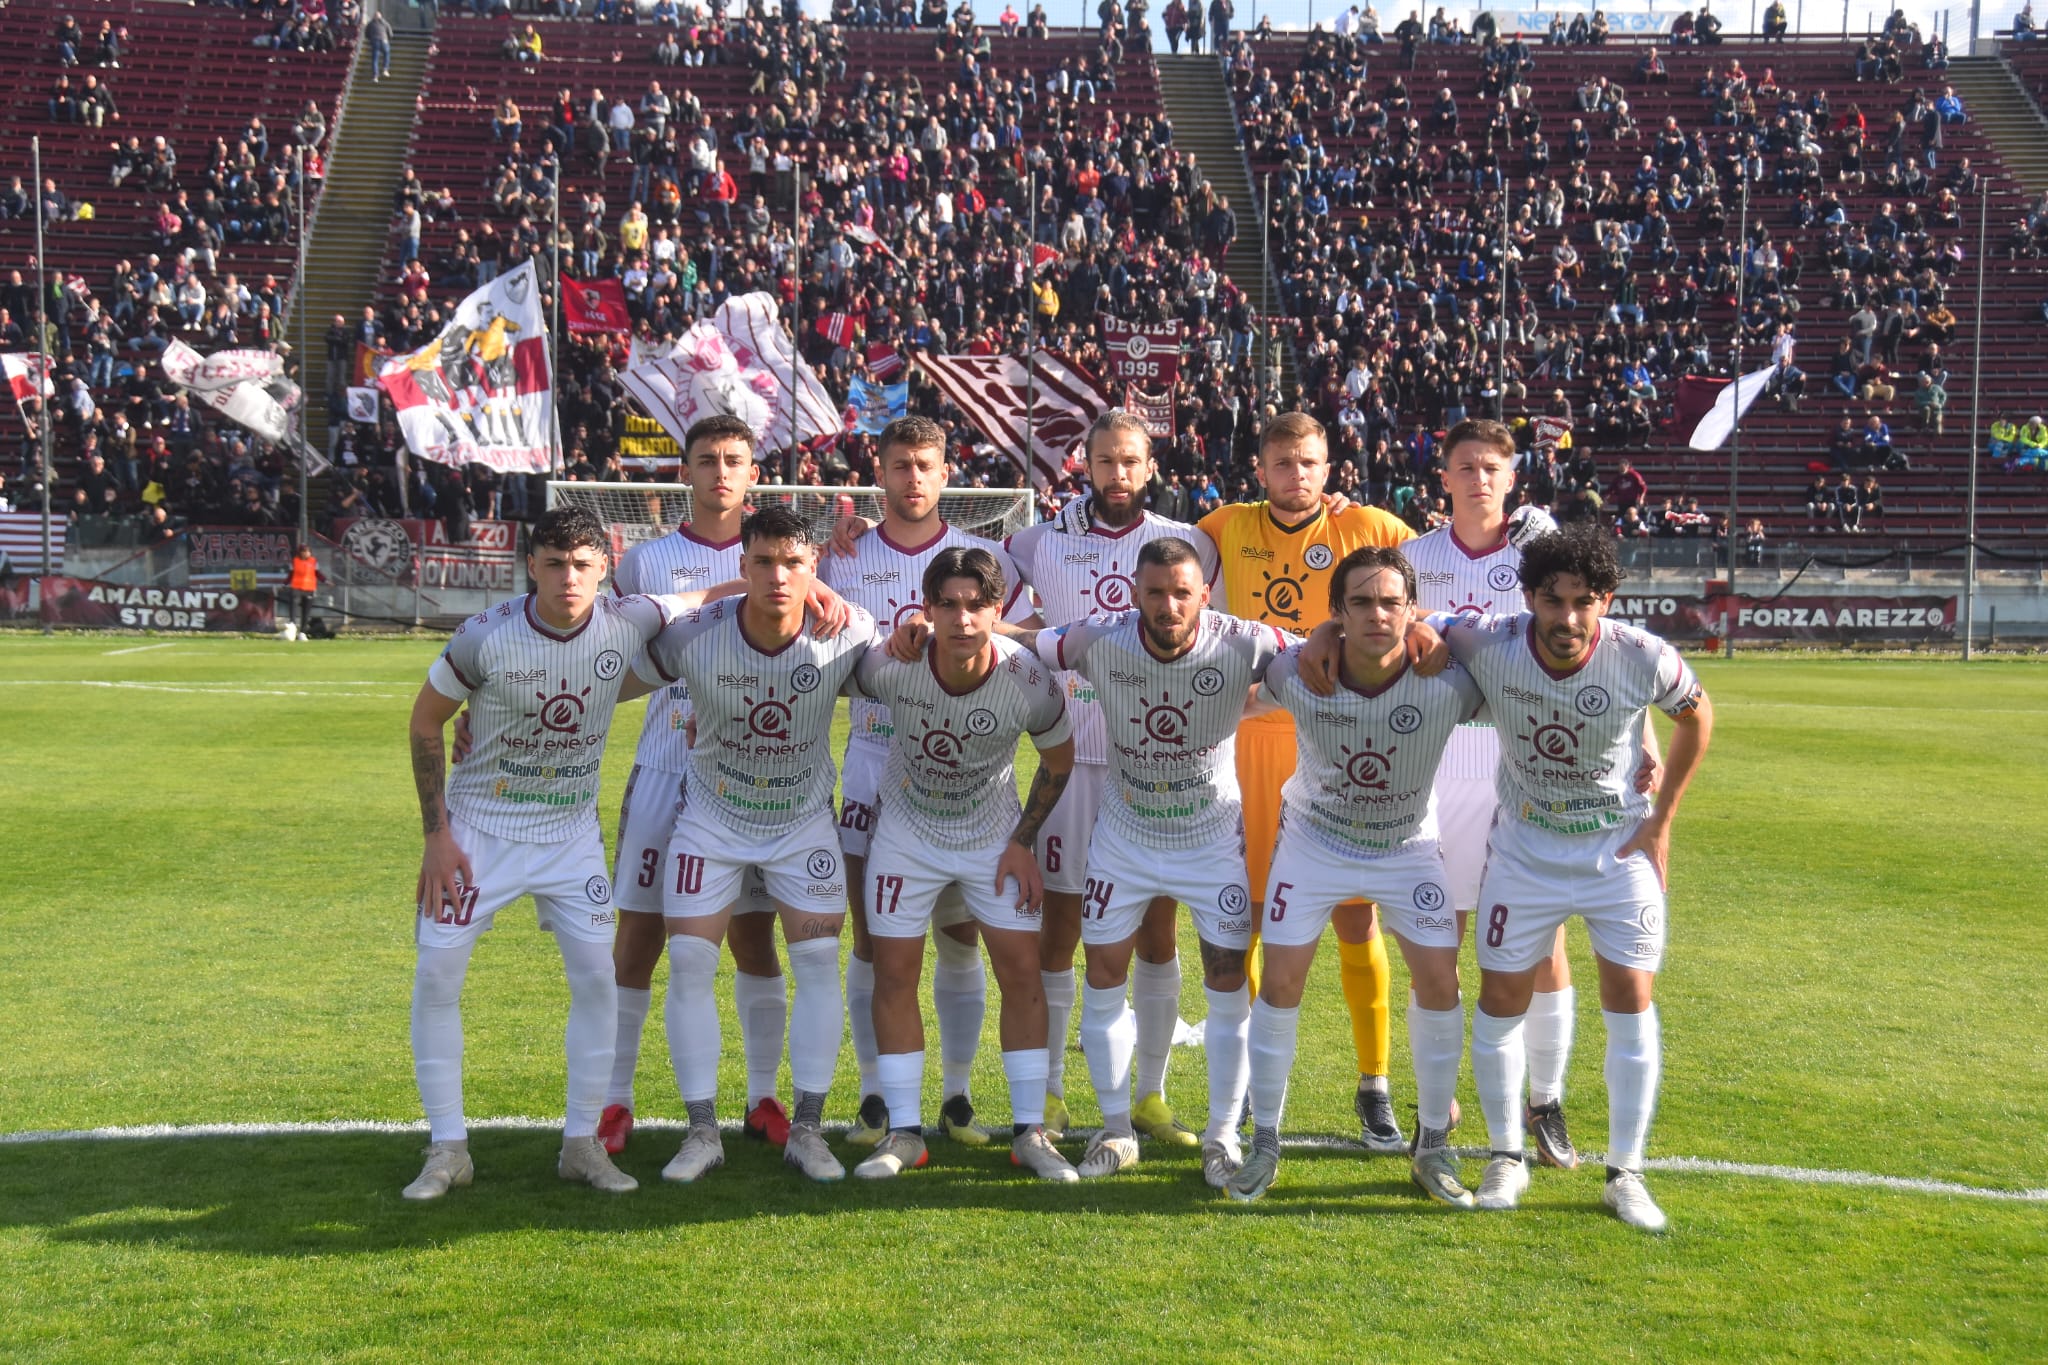 Calcio: Arezzo 0 – Ostiamare 0